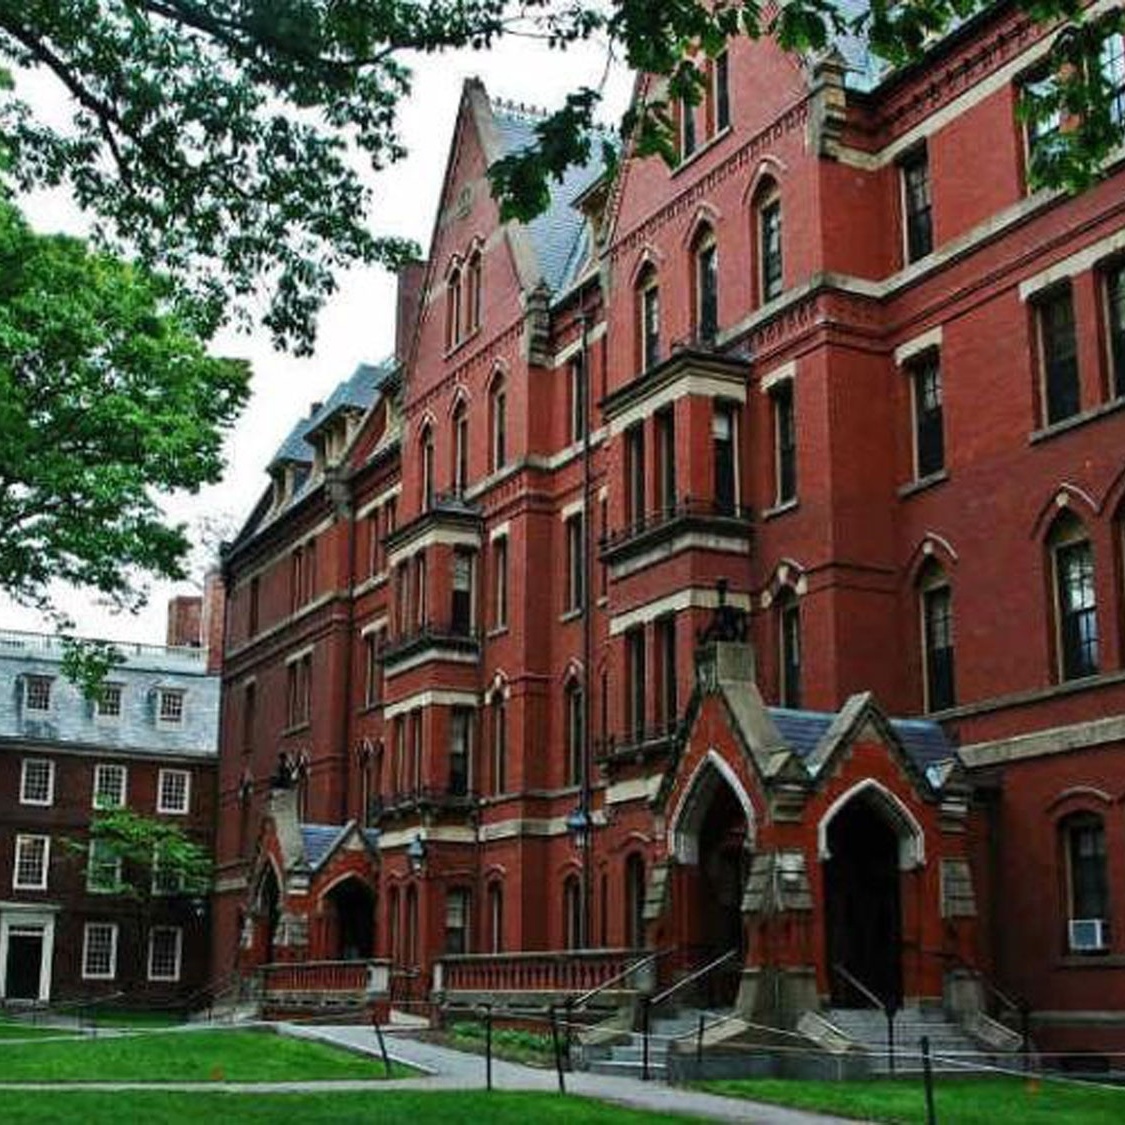 Estude em Harvard de graça e sem sair de casa: veja 110 cursos